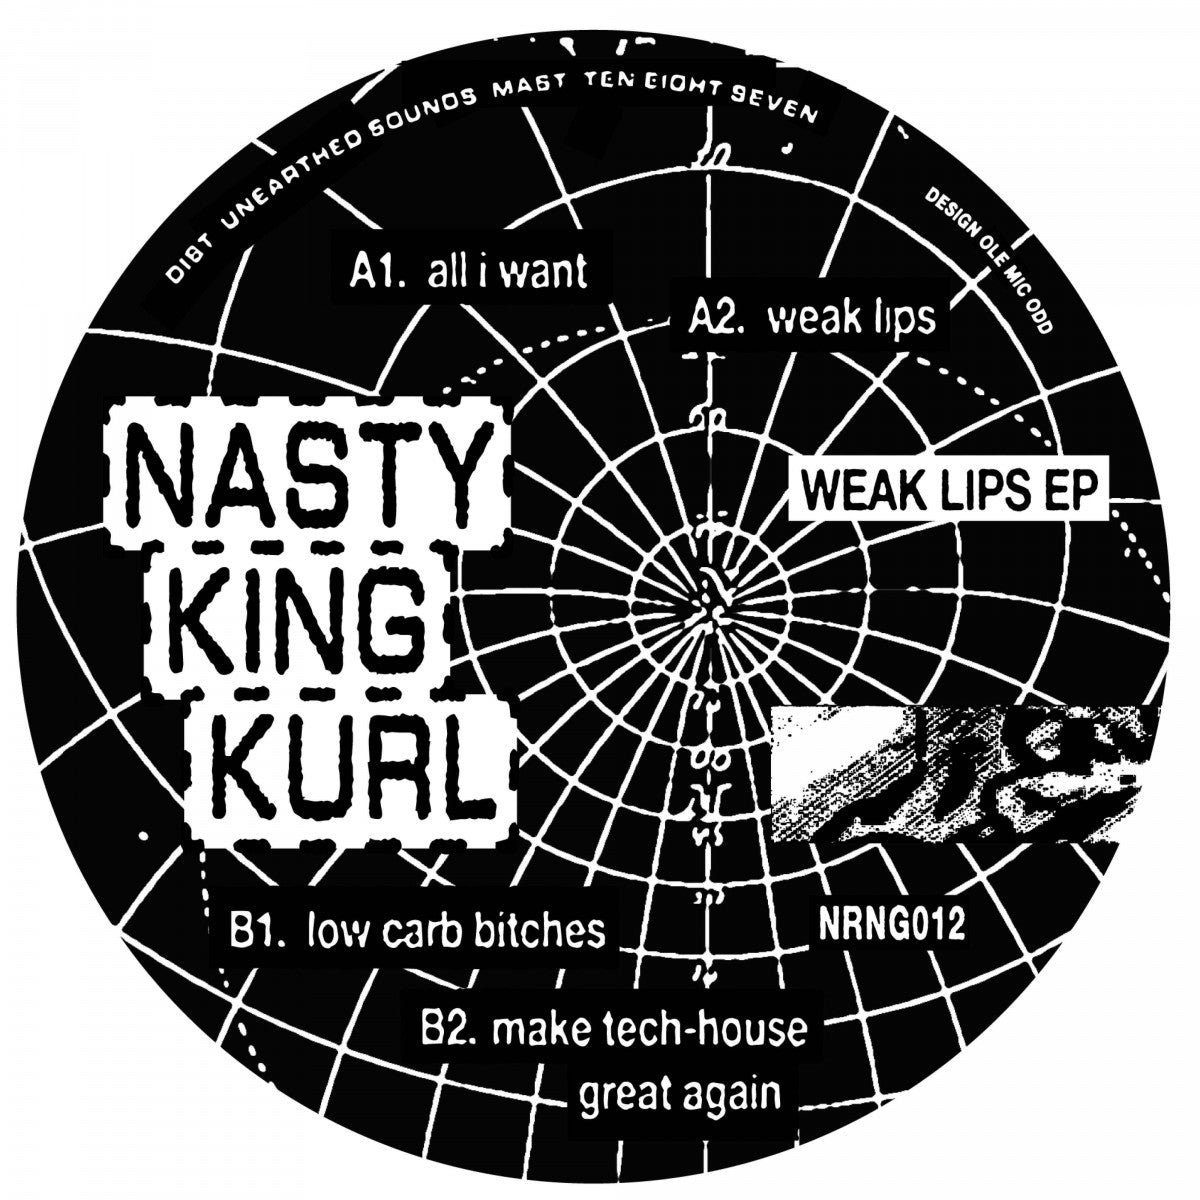 Nasty King Kurl - Weak Lips